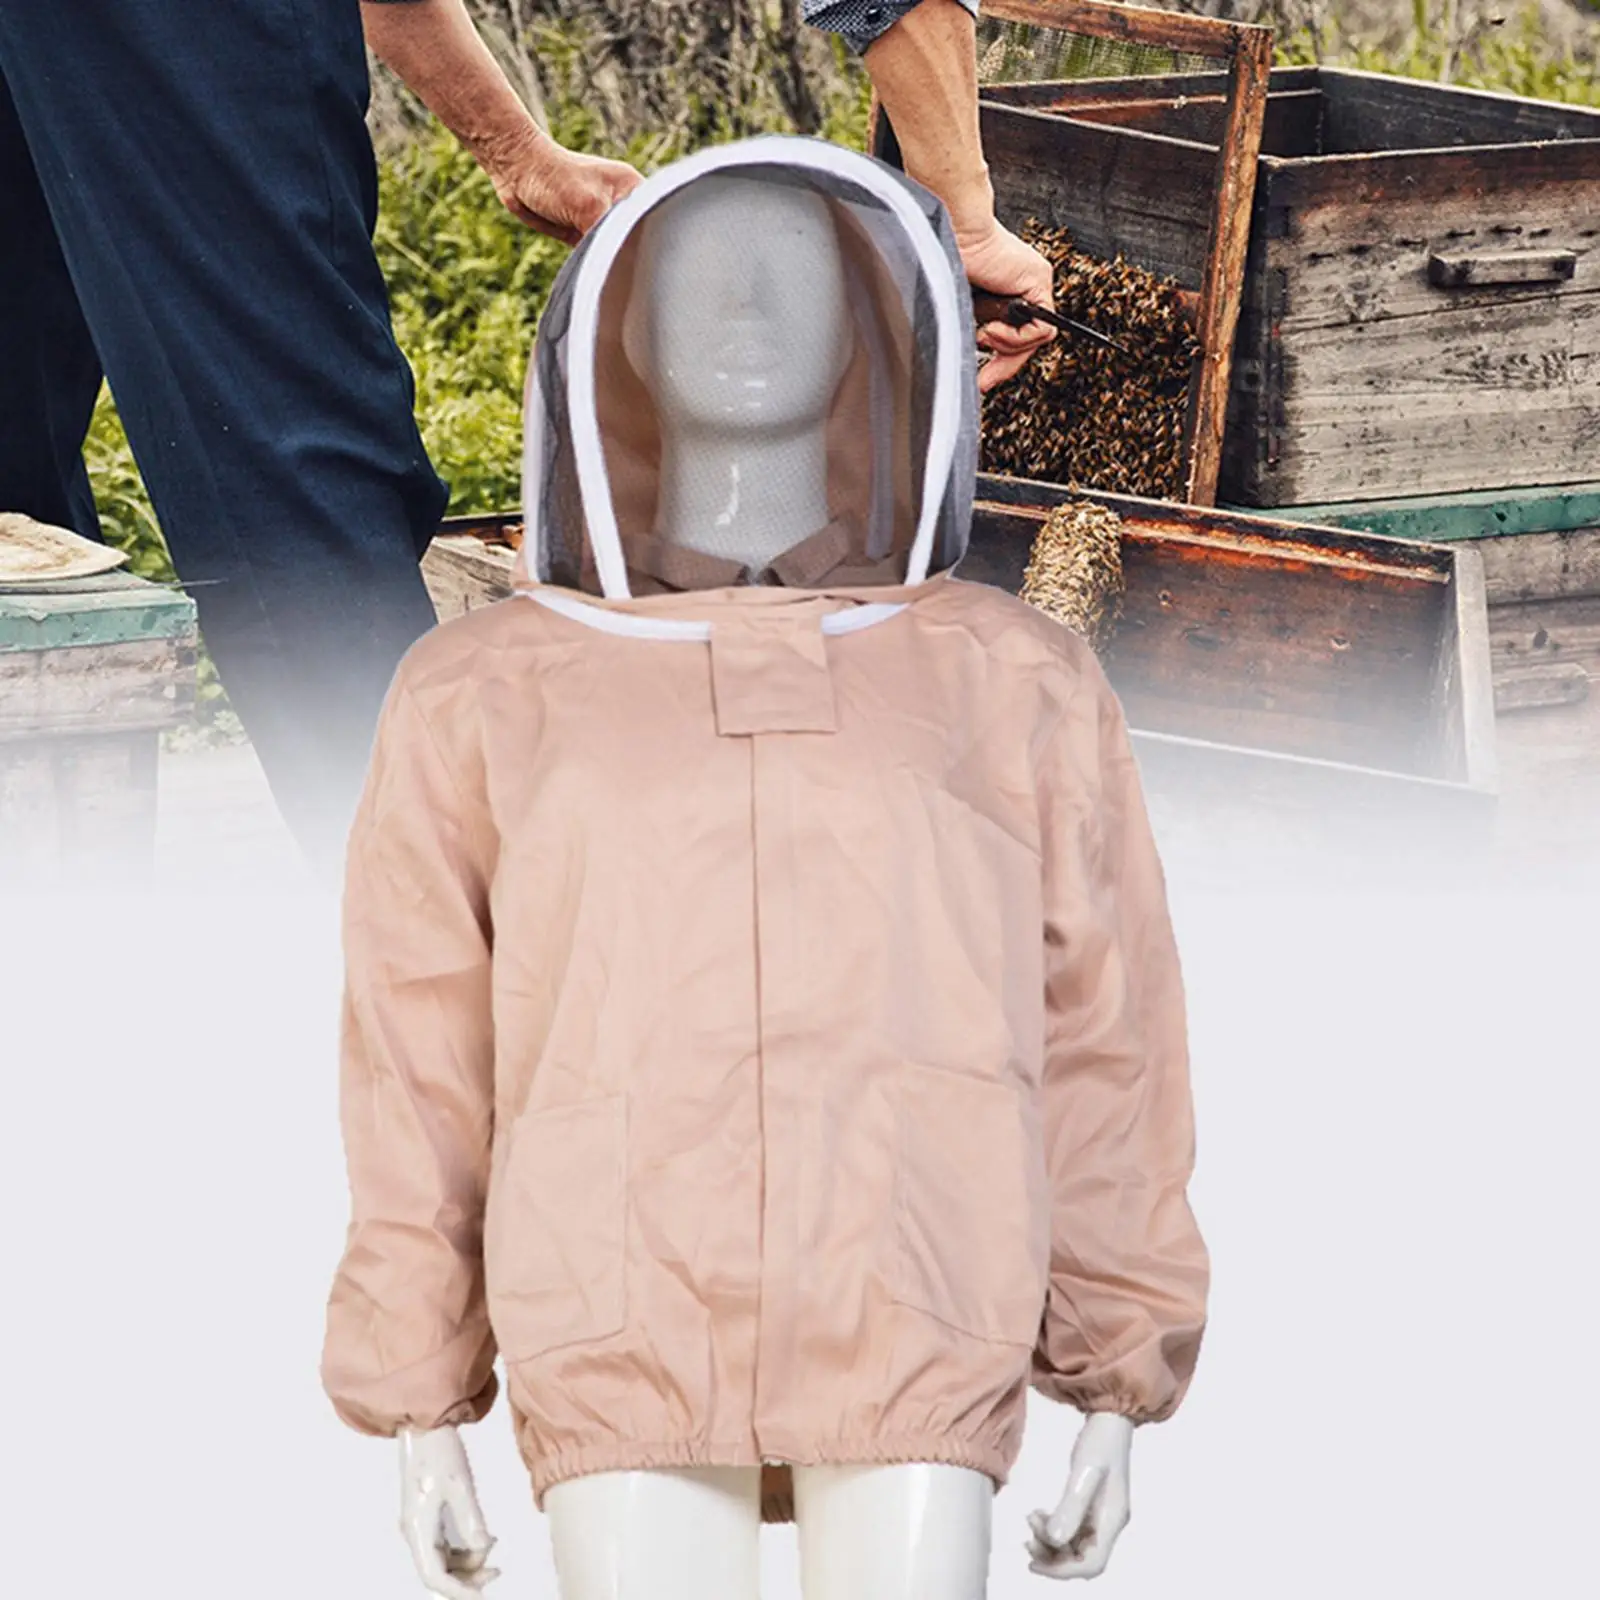 Beekeeping Jacket Breathable with Pockets Beekeeper Jacket Beekeeper Field Work Jackets for Outdoor Backyard Indoor